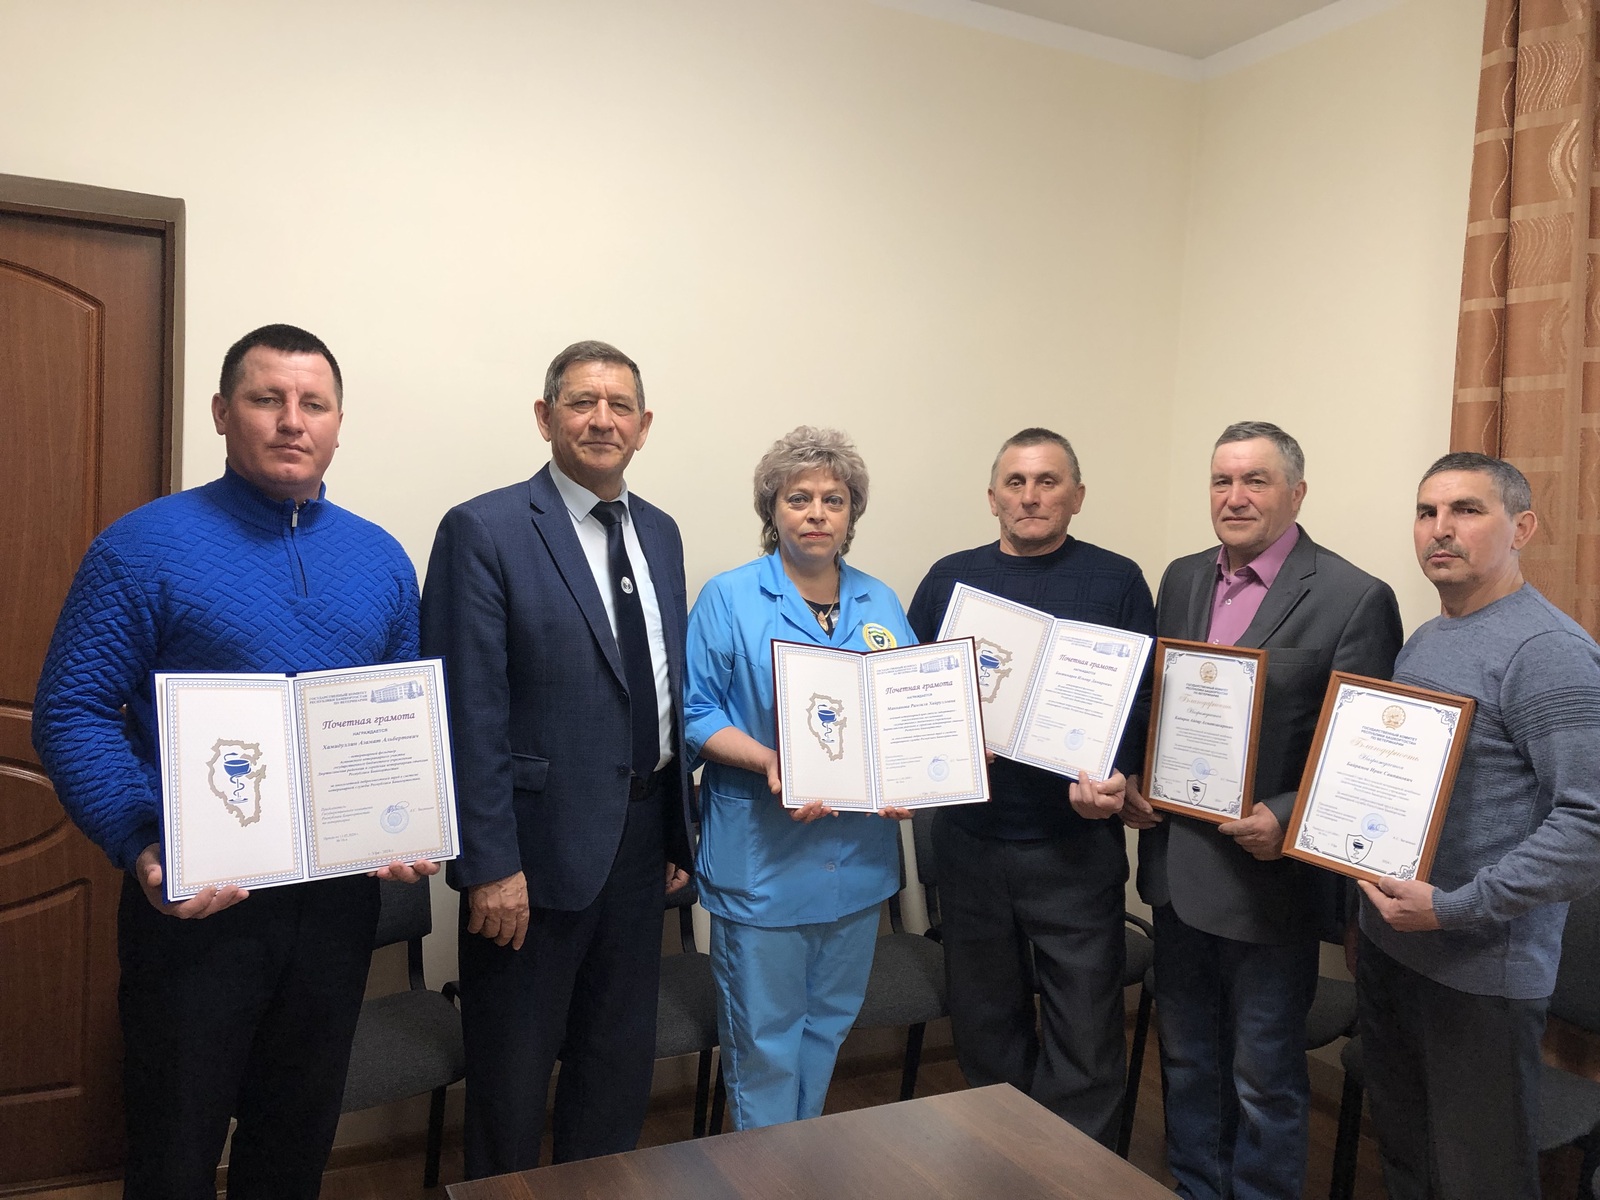 Высокий профессионализм сотрудников ветеринарной службы Дюртюлинского района отмечен наградами